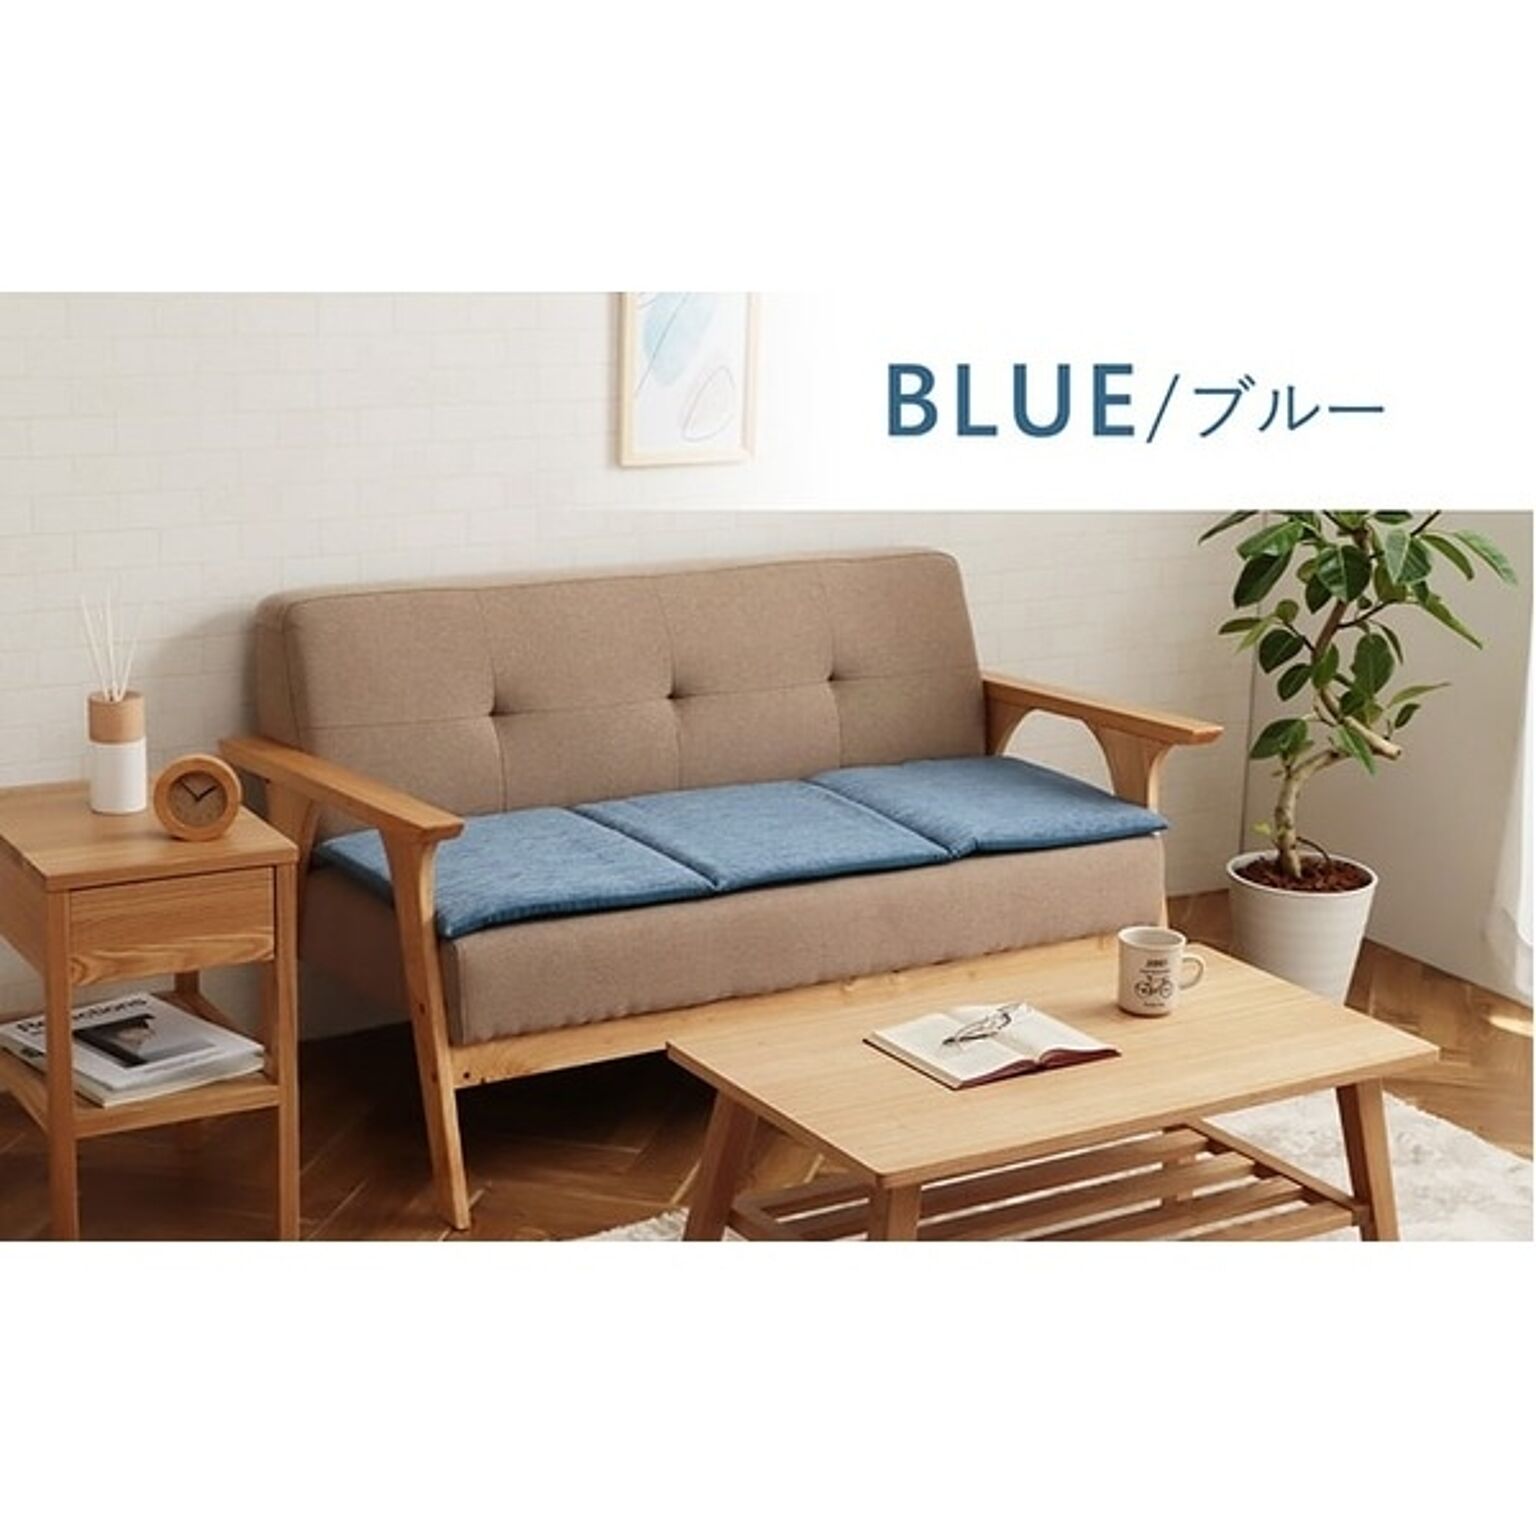 クッション 日本製 ベンチシート フリーシート 無地 シンプル ブルー 約40×120cm